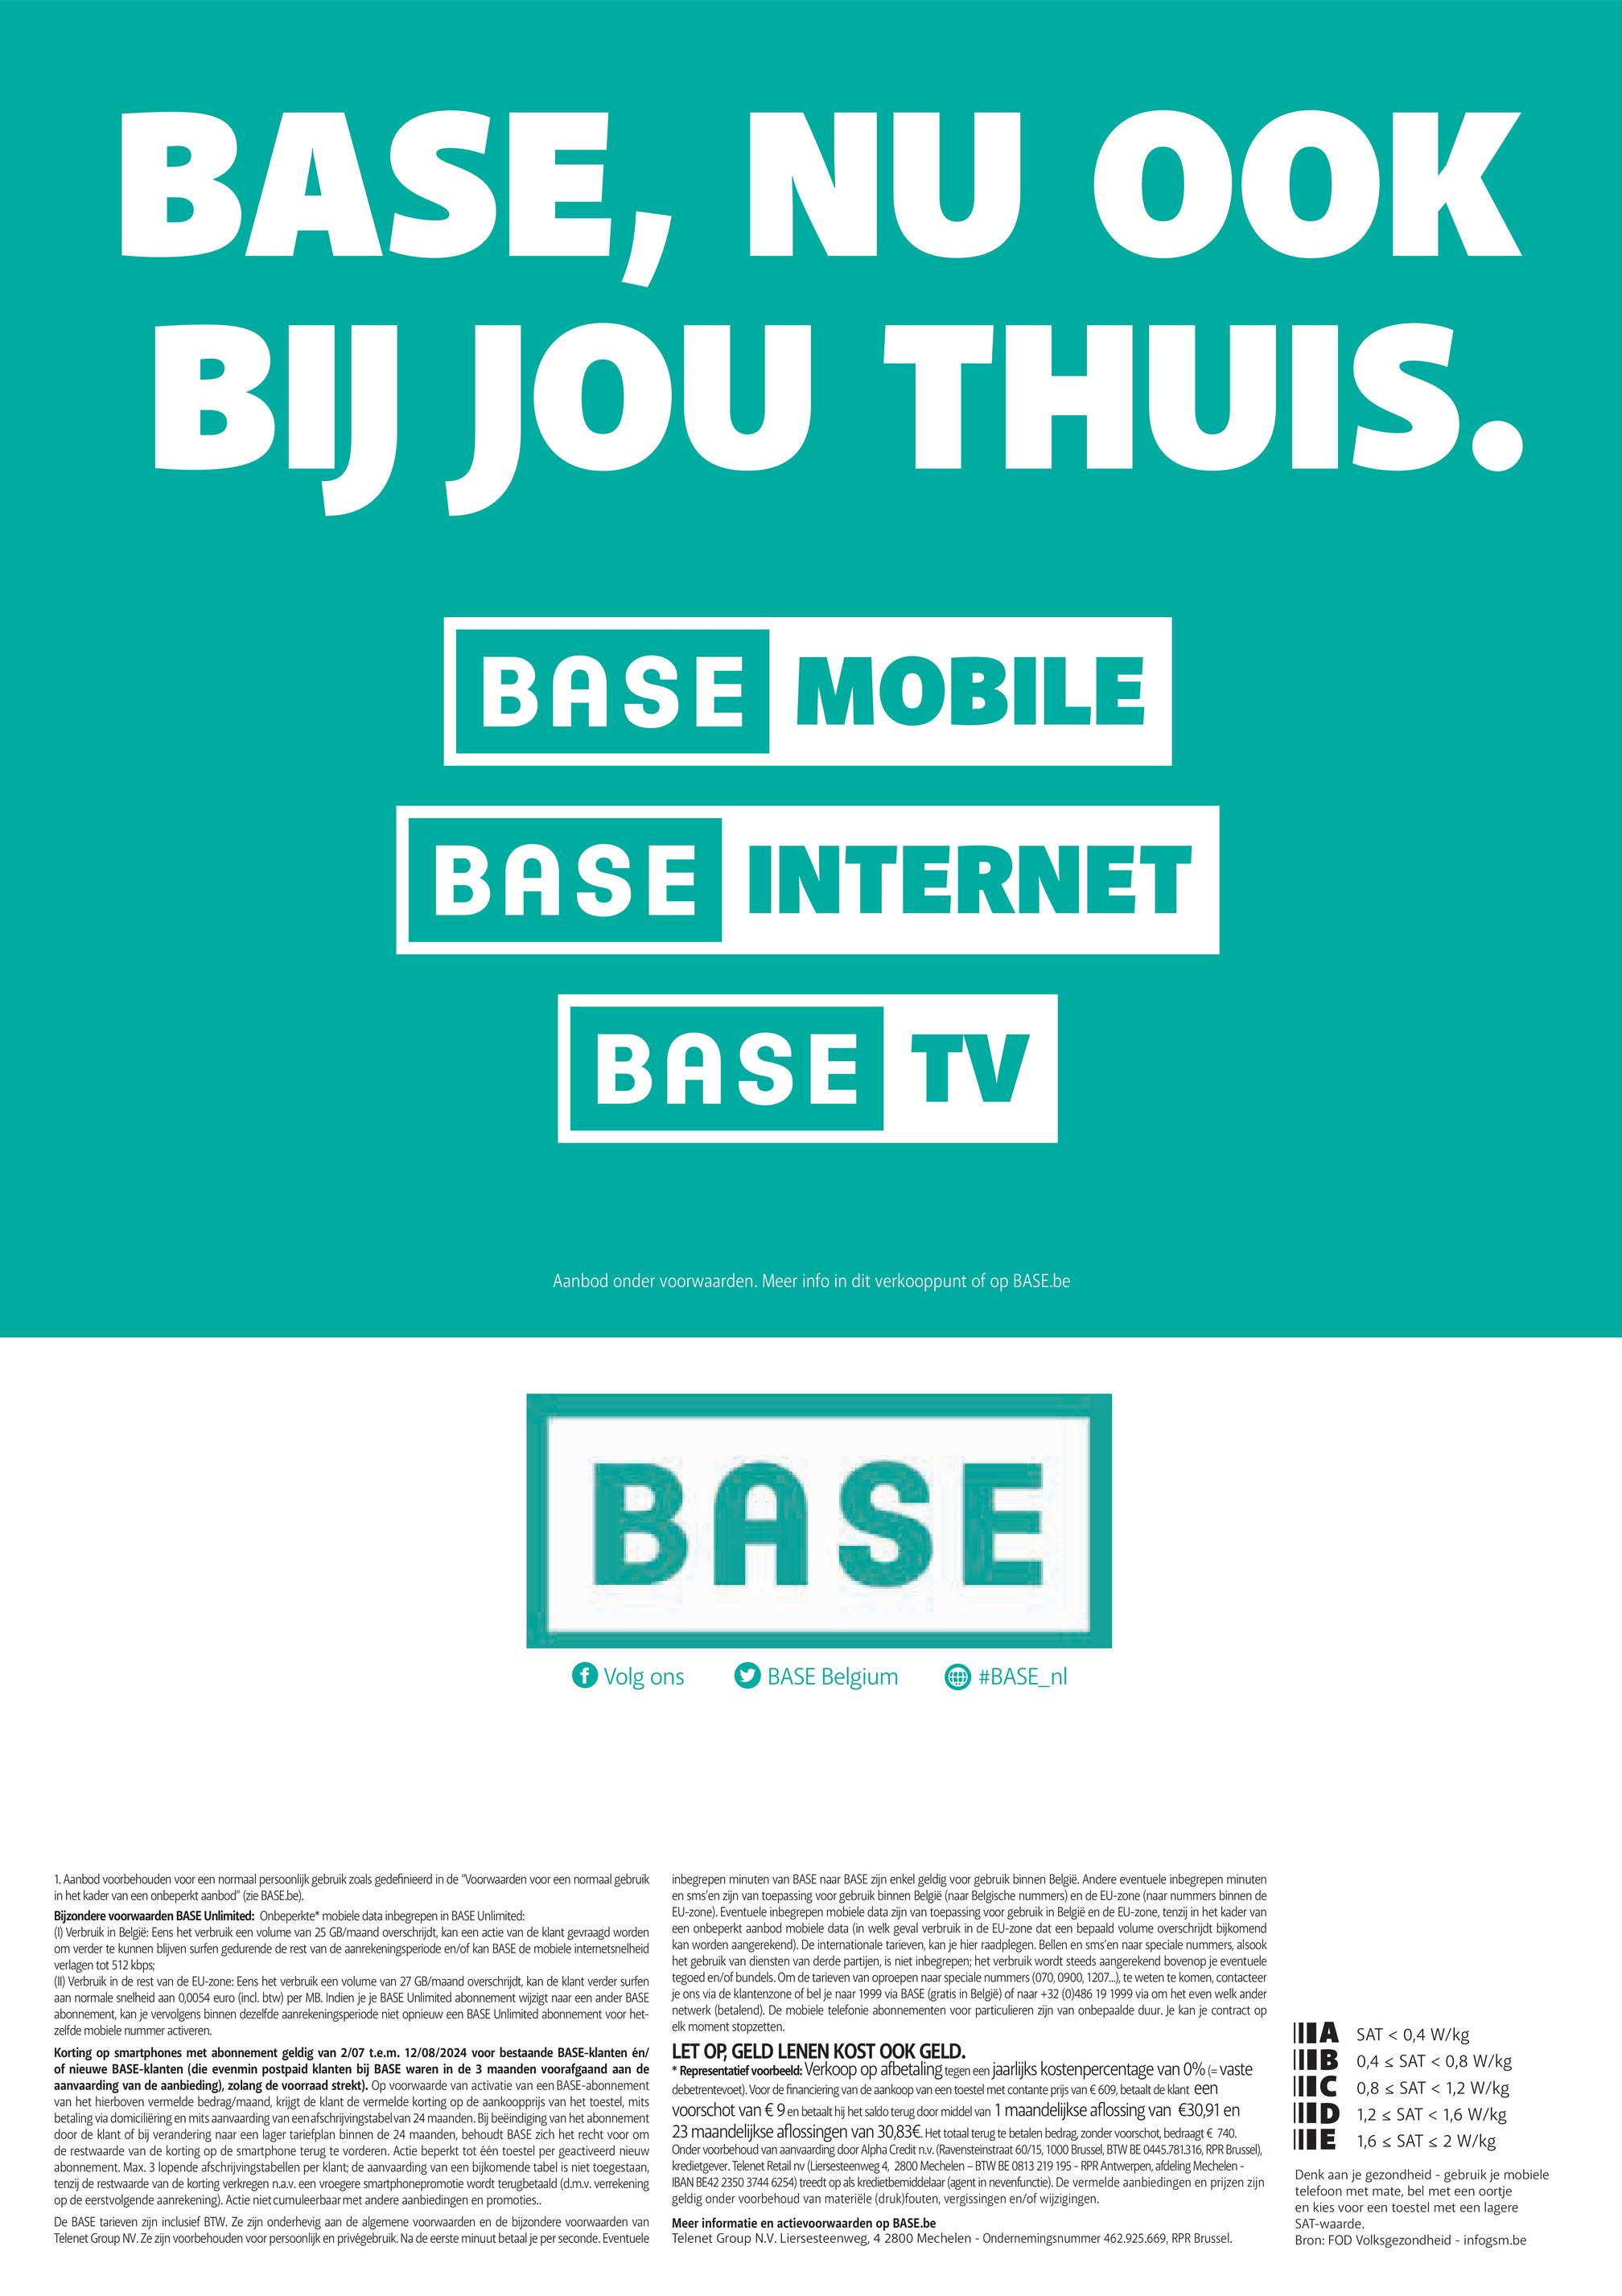 BASE, NU OOK
BIJ JOU THUIS.
BASE MOBILE
BASE INTERNET
BASE TV
Aanbod onder voorwaarden. Meer info in dit verkooppunt of
op
BASE.be
BASE
f Volg ons
BASE Belgium
#BASE_nl
1. Aanbod voorbehouden voor een normaal persoonlijk gebruik zoals gedefinieerd in de "Voorwaarden voor een normaal gebruik
in het kader van een onbeperkt aanbod" (zie BASE.be).
Bijzondere voorwaarden BASE Unlimited: Onbeperkte* mobiele data inbegrepen in BASE Unlimited:
(1) Verbruik in België: Eens het verbruik een volume van 25 GB/maand overschrijdt, kan een actie van de klant gevraagd worden
om verder te kunnen blijven surfen gedurende de rest van de aanrekeningsperiode en/of kan BASE de mobiele internetsnelheid
verlagen tot 512 kbps;
(II) Verbruik in de rest van de EU-zone: Eens het verbruik een volume van 27 GB/maand overschrijdt, kan de klant verder surfen
aan normale snelheid aan 0,0054 euro (incl. btw) per MB. Indien je je BASE Unlimited abonnement wijzigt naar een ander BASE
abonnement, kan je vervolgens binnen dezelfde aanrekeningsperiode niet opnieuw een BASE Unlimited abonnement voor het-
zelfde mobiele nummer activeren.
Korting op smartphones met abonnement geldig van 2/07 t.e.m. 12/08/2024 voor bestaande BASE-klanten en/
of nieuwe BASE-klanten (die evenmin postpaid klanten bij BASE waren in de 3 maanden voorafgaand aan de
aanvaarding van de aanbieding), zolang de voorraad strekt). Op voorwaarde van activatie van een BASE-abonnement
van het hierboven vermelde bedrag/maand, krijgt de klant de vermelde korting op de aankoopprijs van het toestel, mits
betaling via domiciliëring en mits aanvaarding van een afschrijvingstabel van 24 maanden. Bij beëindiging van het abonnement
door de klant of bij verandering naar een lager tariefplan binnen de 24 maanden, behoudt BASE zich het recht voor om
de restwaarde van de korting op de smartphone terug te vorderen. Actie beperkt tot één toestel per geactiveerd nieuw
abonnement. Max. 3 lopende afschrijvingstabellen per klant; de aanvaarding van een bijkomende tabel is niet toegestaan,
tenzij de restwaarde van de korting verkregen n.a.v. een vroegere smartphonepromotie wordt terugbetaald (d.m.v. verrekening
op de eerstvolgende aanrekening). Actie niet cumuleerbaar met andere aanbiedingen en promoties..
De BASE tarieven zijn inclusief BTW. Ze zijn onderhevig aan de algemene voorwaarden en de bijzondere voorwaarden van
Telenet Group NV. Ze zijn voorbehouden voor persoonlijk en privégebruik. Na de eerste minuut betaal je per seconde. Eventuele
inbegrepen minuten van BASE naar BASE zijn enkel geldig voor gebruik binnen België. Andere eventuele inbegrepen minuten
en sms'en zijn van toepassing voor gebruik binnen België (naar Belgische nummers) en de EU-zone (naar nummers binnen de
EU-zone). Eventuele inbegrepen mobiele data zijn van toepassing voor gebruik in België en de EU-zone, tenzij in het kader van
een onbeperkt aanbod mobiele data (in welk geval verbruik in de EU-zone dat een bepaald volume overschrijdt bijkomend
kan worden aangerekend). De internationale tarieven, kan je hier raadplegen. Bellen en sms'en naar speciale nummers, alsook
het gebruik van diensten van derde partijen, is niet inbegrepen; het verbruik wordt steeds aangerekend bovenop je eventuele
tegoed en/of bundels. Om de tarieven van oproepen naar speciale nummers (070, 0900, 1207...), te weten te komen, contacteer
je ons via de klantenzone of bel je naar 1999 via BASE (gratis in België) of naar +32 (0)486 19 1999 via om het even welk ander
netwerk (betalend). De mobiele telefonie abonnementen voor particulieren zijn van onbepaalde duur. Je kan je contract op
elk moment stopzetten.
LET OP, GELD LENEN KOST OOK GELD.
*Representatief voorbeeld: Verkoop op afbetaling tegen een jaarlijks kostenpercentage van 0% (= vaste
debetrentevoet). Voor de financiering van de aankoop van een toestel met contante prijs van € 609, betaalt de klant een
voorschot van € 9 en betaalt hij het saldo terug door middel van 1 maandelijkse aflossing van €30,91 en
23 maandelijkse aflossingen van 30,83€. Het totaal terug te betalen bedrag, zonder voorschot, bedraagt € 740.
Onder voorbehoud van aanvaarding door Alpha Credit n.v. (Ravensteinstraat 60/15, 1000 Brussel, BTW BE 0445.781.316, RPR Brussel),
kredietgever. Telenet Retail nv (Liersesteenweg 4, 2800 Mechelen - BTW BE 0813 219 195 - RPR Antwerpen, afdeling Mechelen -
IBAN BE42 2350 3744 6254) treedt op als kredietbemiddelaar (agent in nevenfunctie). De vermelde aanbiedingen en prijzen zijn
geldig onder voorbehoud van materiële (druk)fouten, vergissingen en/of wijzigingen.
Meer informatie en actievoorwaarden op BASE.be
Telenet Group N.V. Liersesteenweg, 4 2800 Mechelen - Ondernemingsnummer 462.925.669, RPR Brussel.
ASAT 0,4 W/kg
IIB 0,4 SAT < 0,8 W/kg
C 0,8 SAT < 1,2 W/kg
ID 1,2 SAT < 1,6 W/kg
E 1,6 SAT < 2 W/kg
Denk aan je gezondheid - gebruik je mobiele
telefoon met mate, bel met een oortje
en kies voor een toestel met een lagere
SAT-waarde.
Bron: FOD Volksgezondheid - infogsm.be